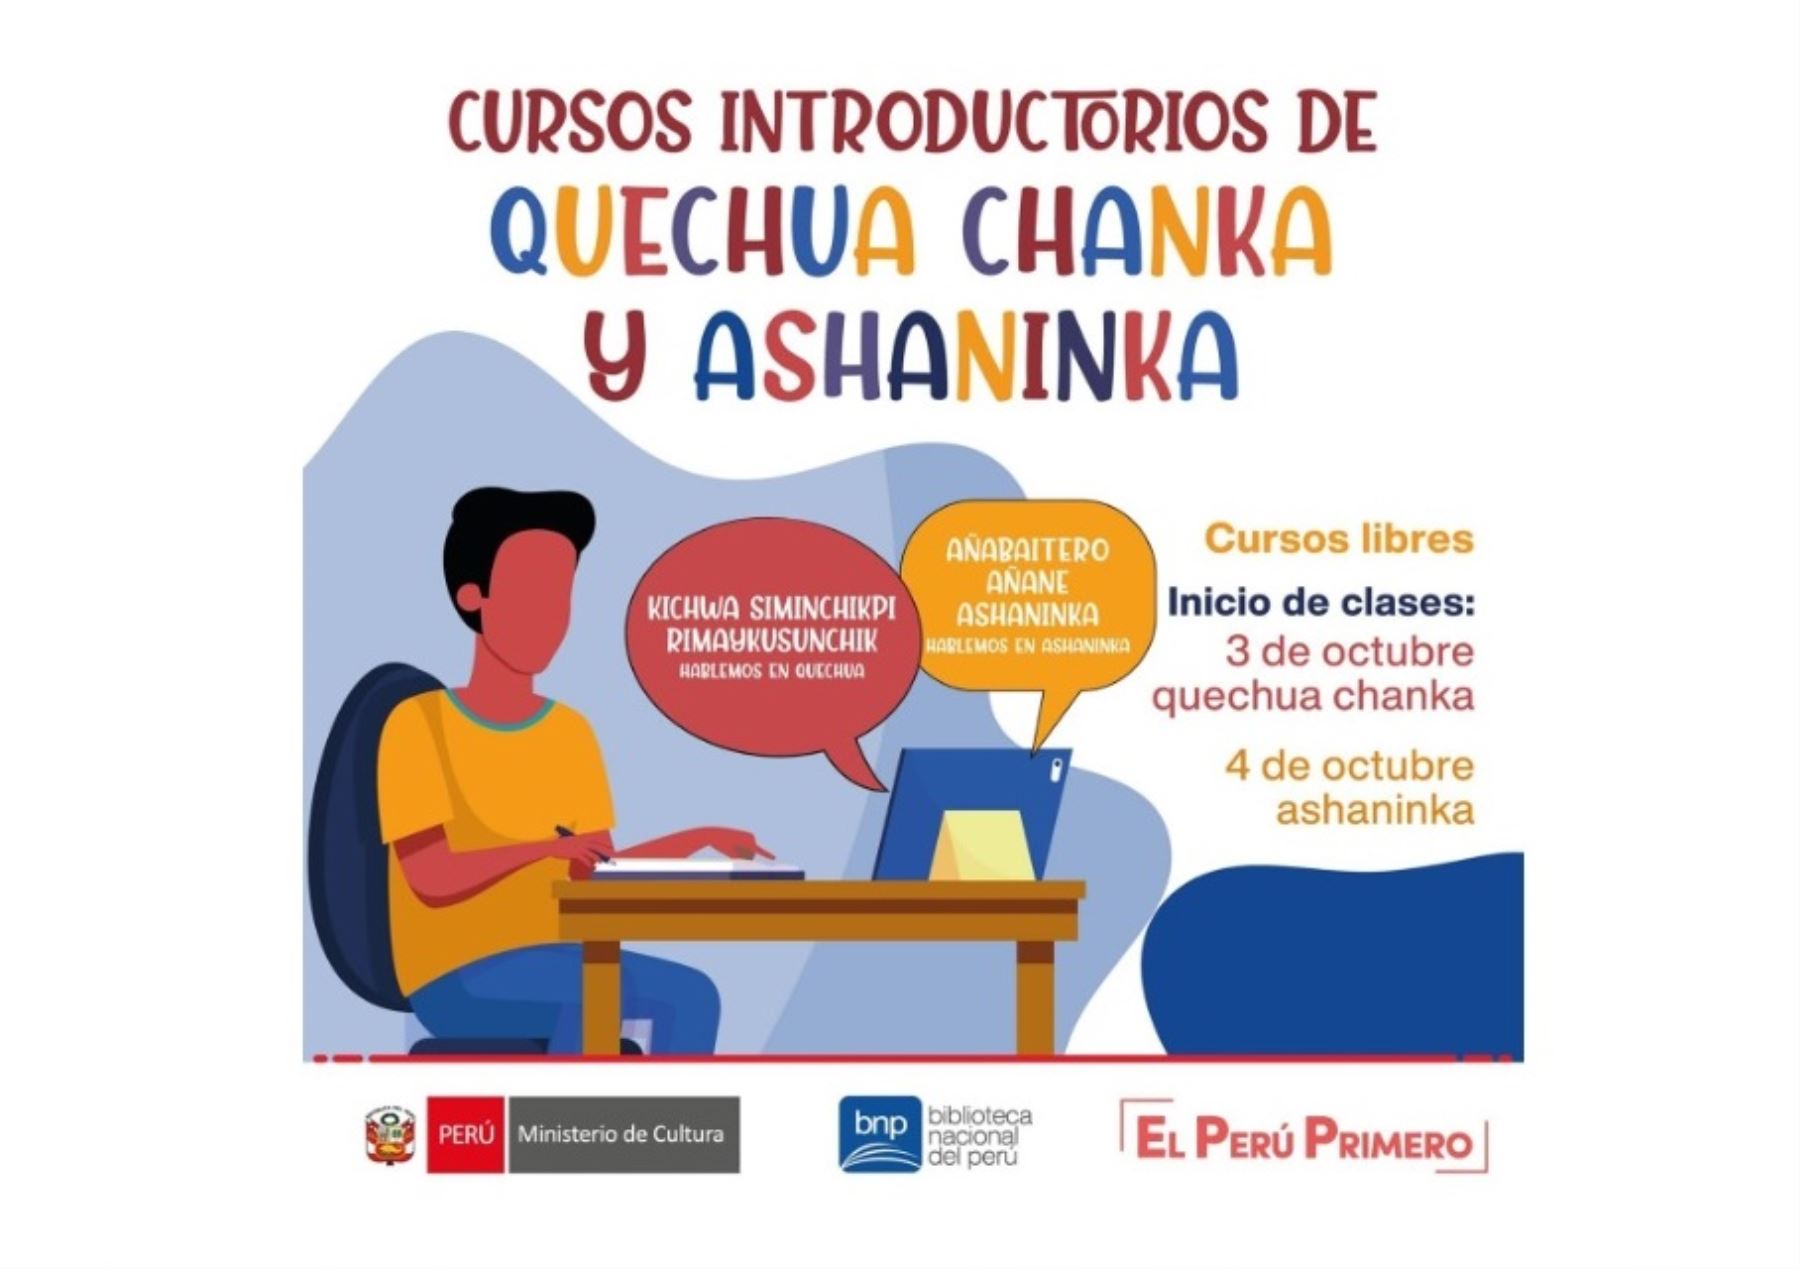 La Biblioteca Nacional y el Ministerio de Cultura organizan cursos para aprender a hablar quechua y asháninka, dos lenguas originarias del Perú.